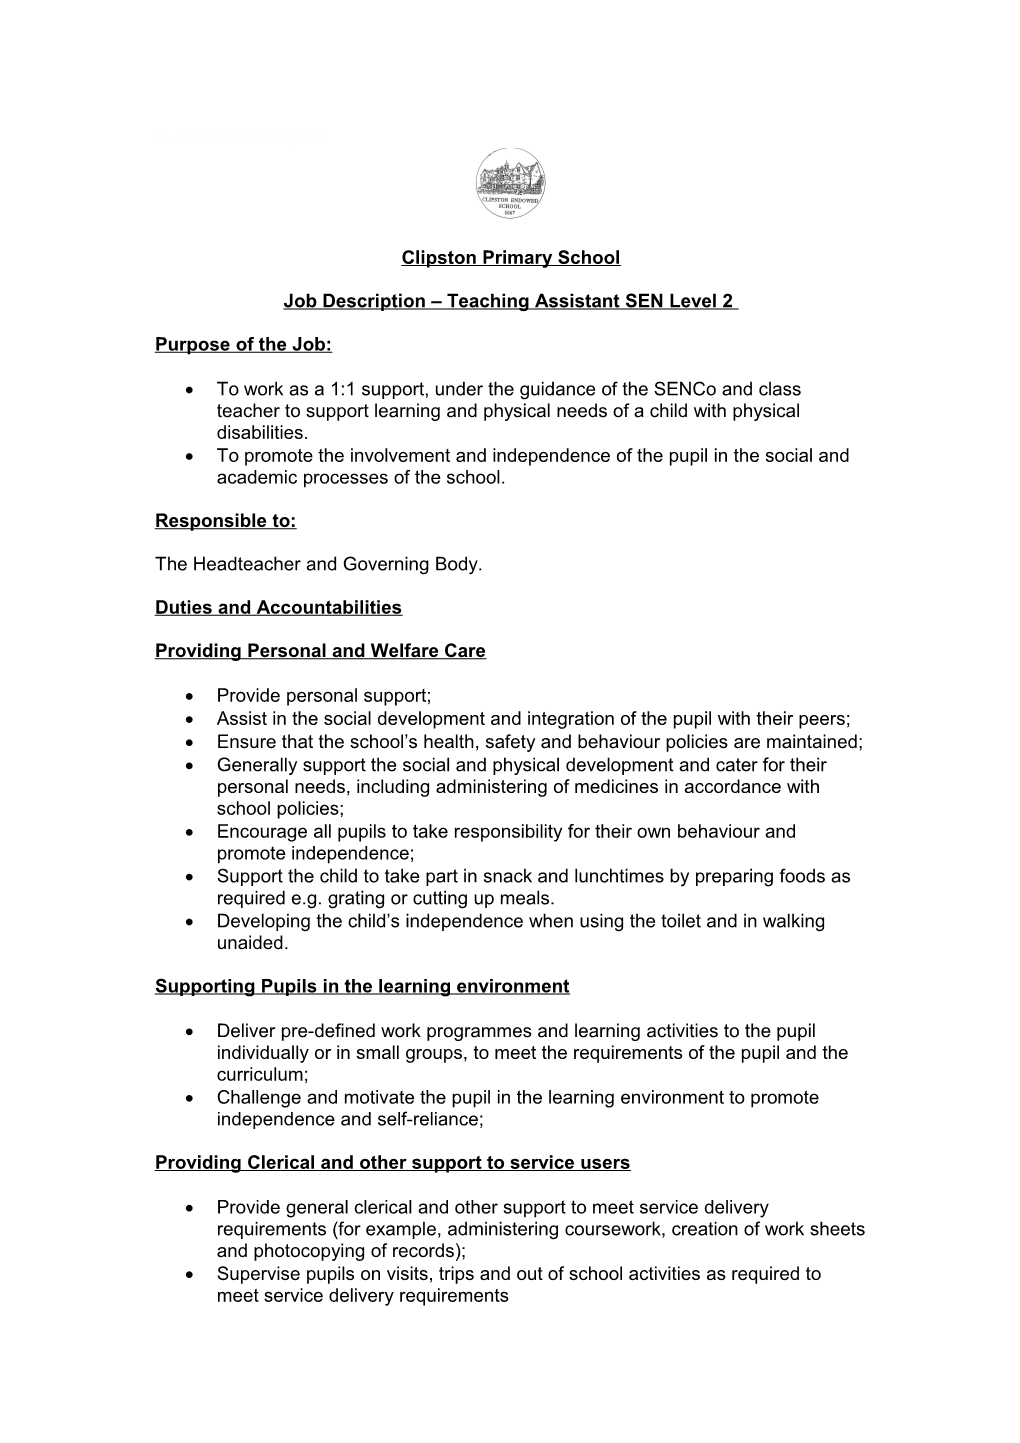 Job Description Teaching Assistant SEN Level 2